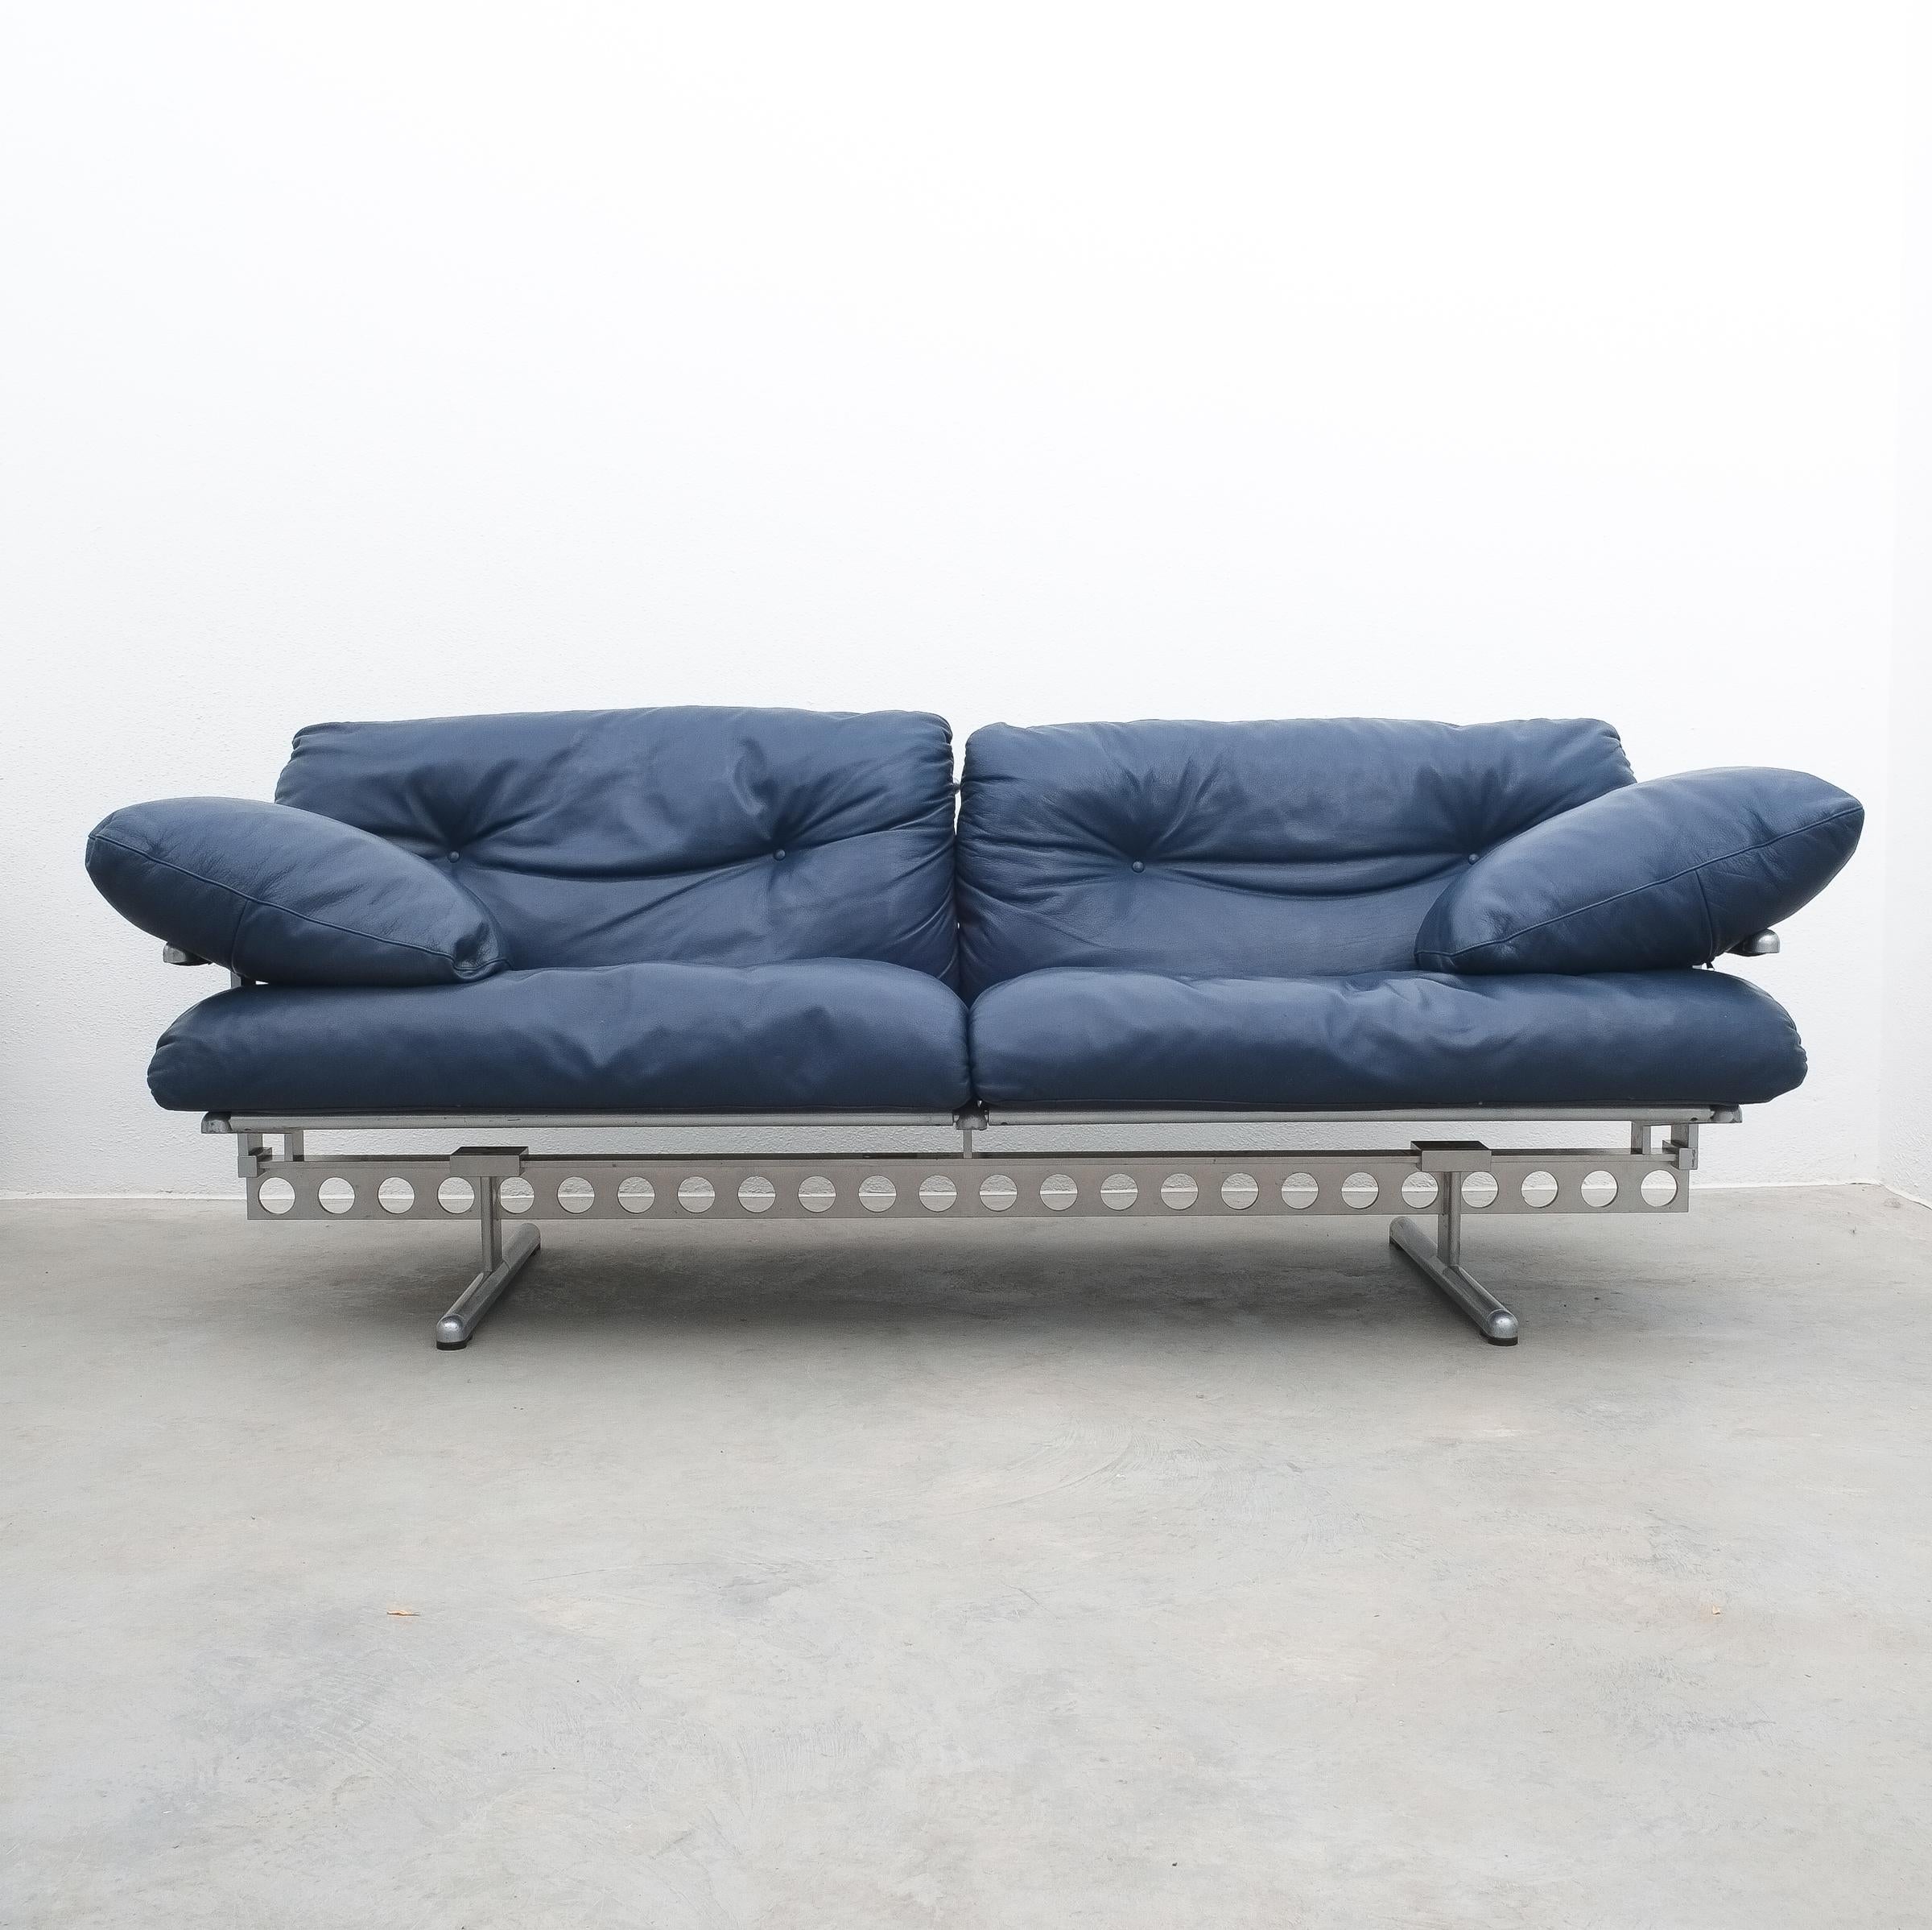 Pierluigi Cerri Ouverture Leather Sofa for Poltrona Frau, Italy, 1980

Large 99